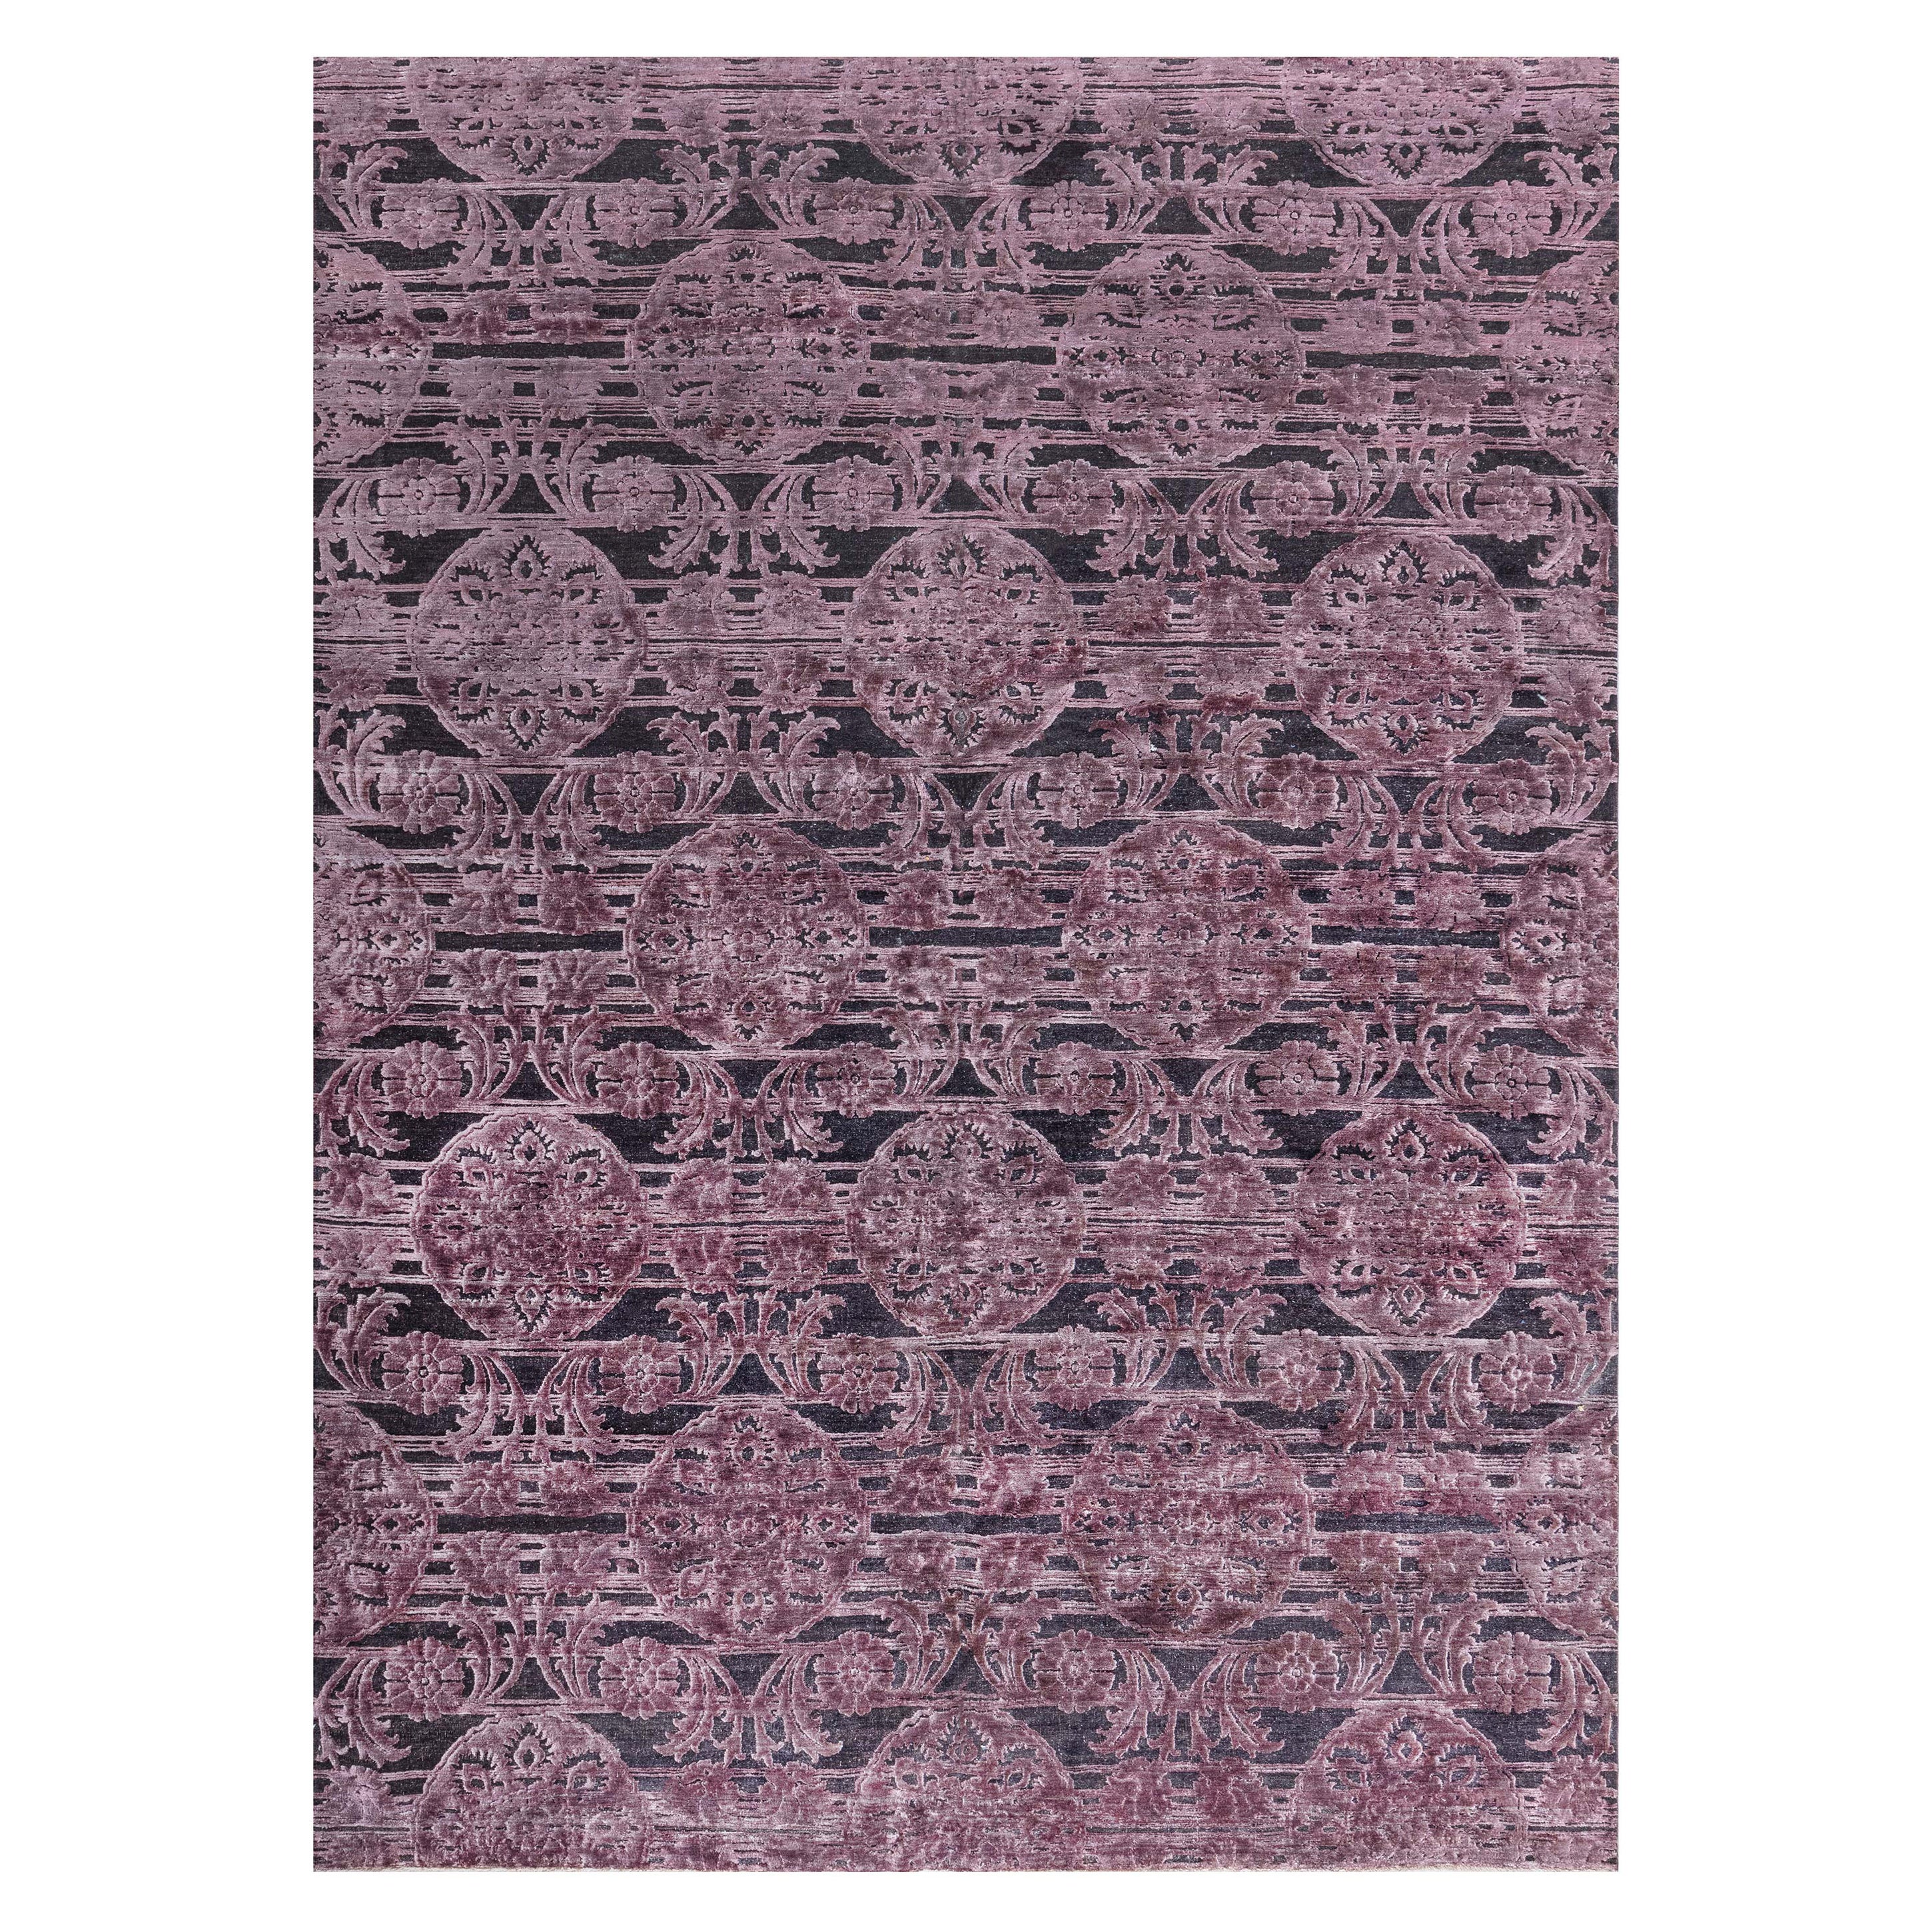 Zeitgenössischer indischer handgewebter Teppich aus Seide und Wolle von Doris Leslie Blau